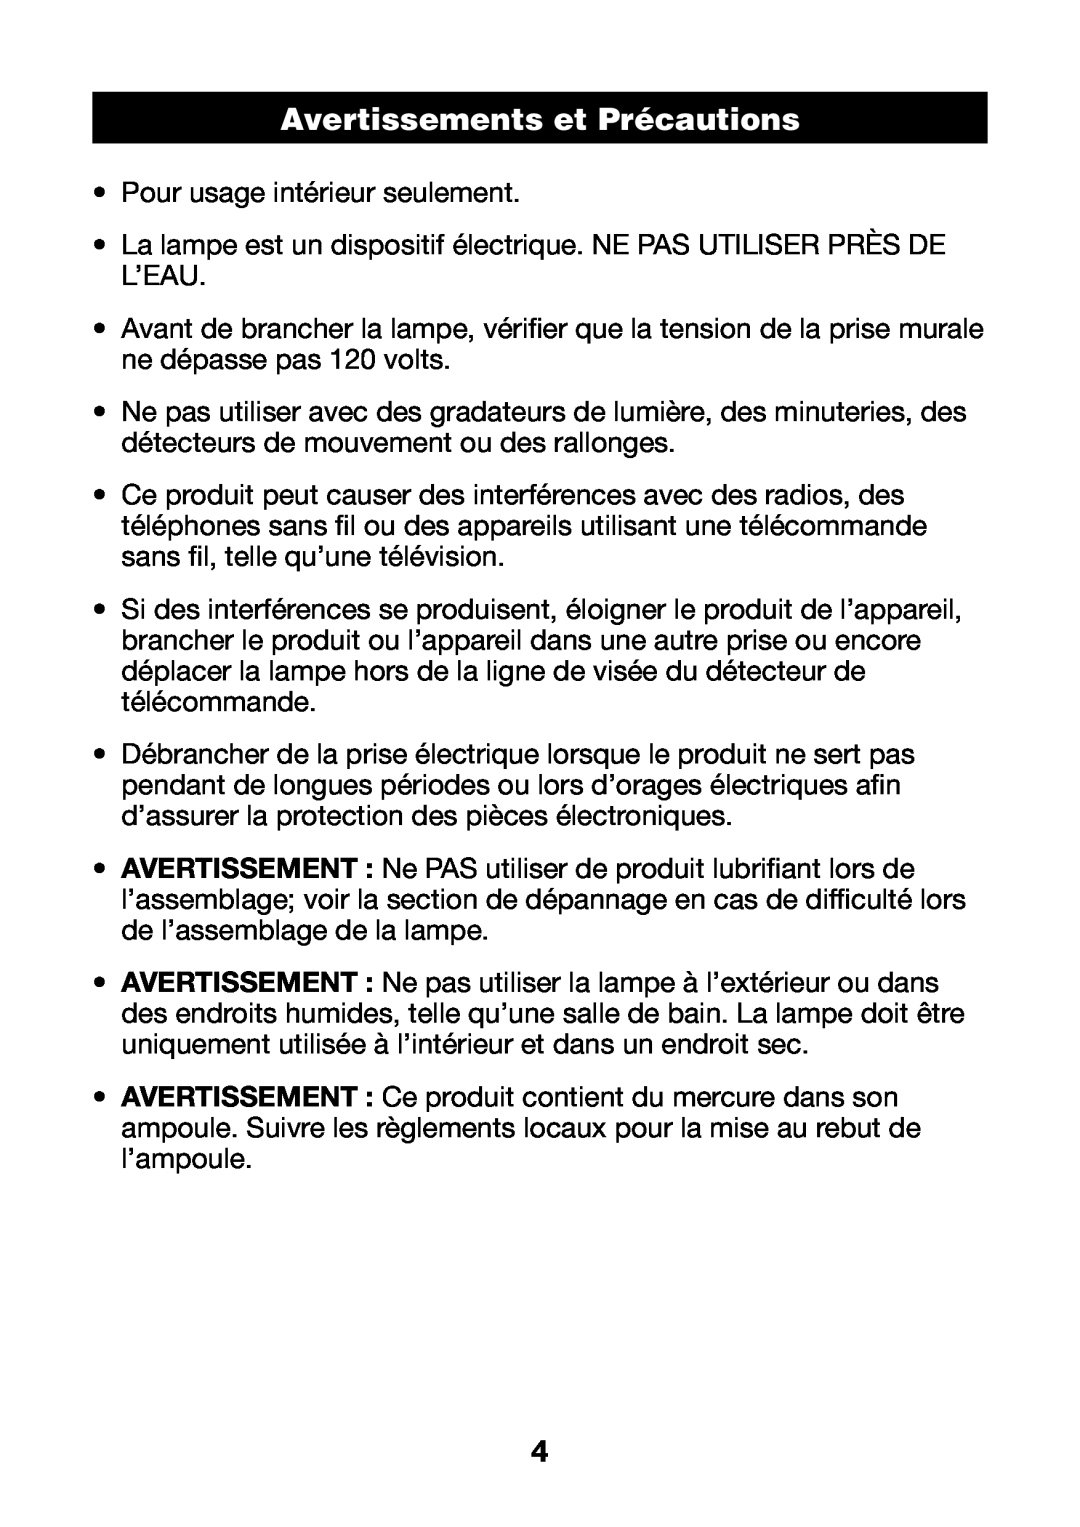 Verilux PL04 manual Avertissements et Précautions 